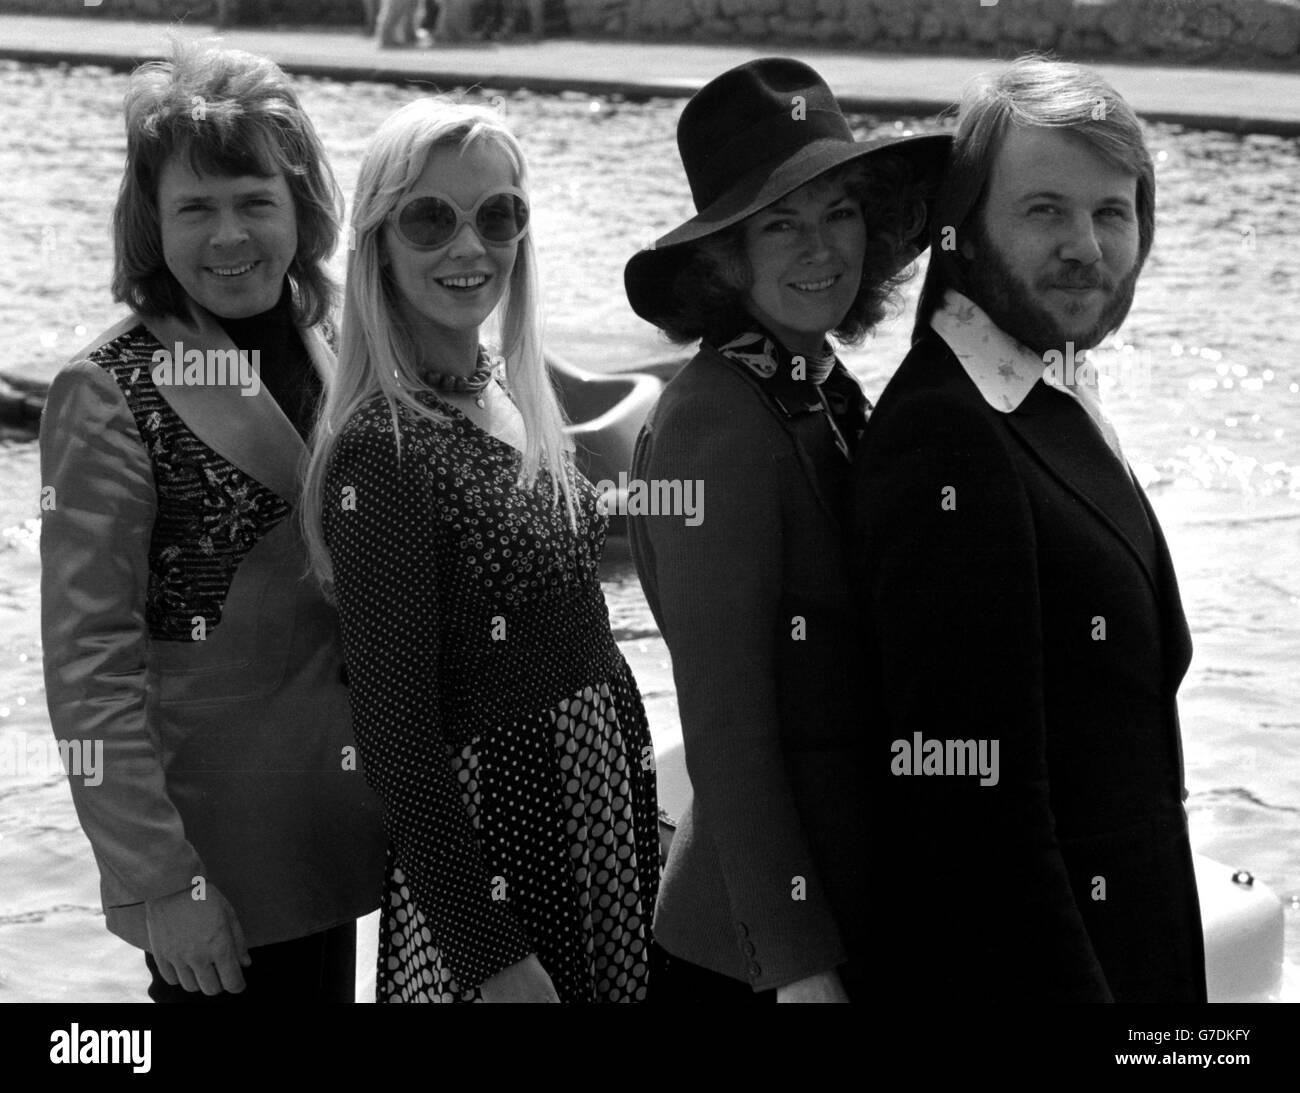 Le groupe pop Abba à Brighton, où ils ont remporté le concours Eurovision de la chanson pour la Suède avec 'Waterloo', chanté par les filles, Annifrid Lyngstad (Frida), à droite, et Agnetha Faltskog (Anna). Les autres membres du groupe, Benny Andersson, à droite, et Bjorn Ulvaeus, ont composé la chanson. Banque D'Images